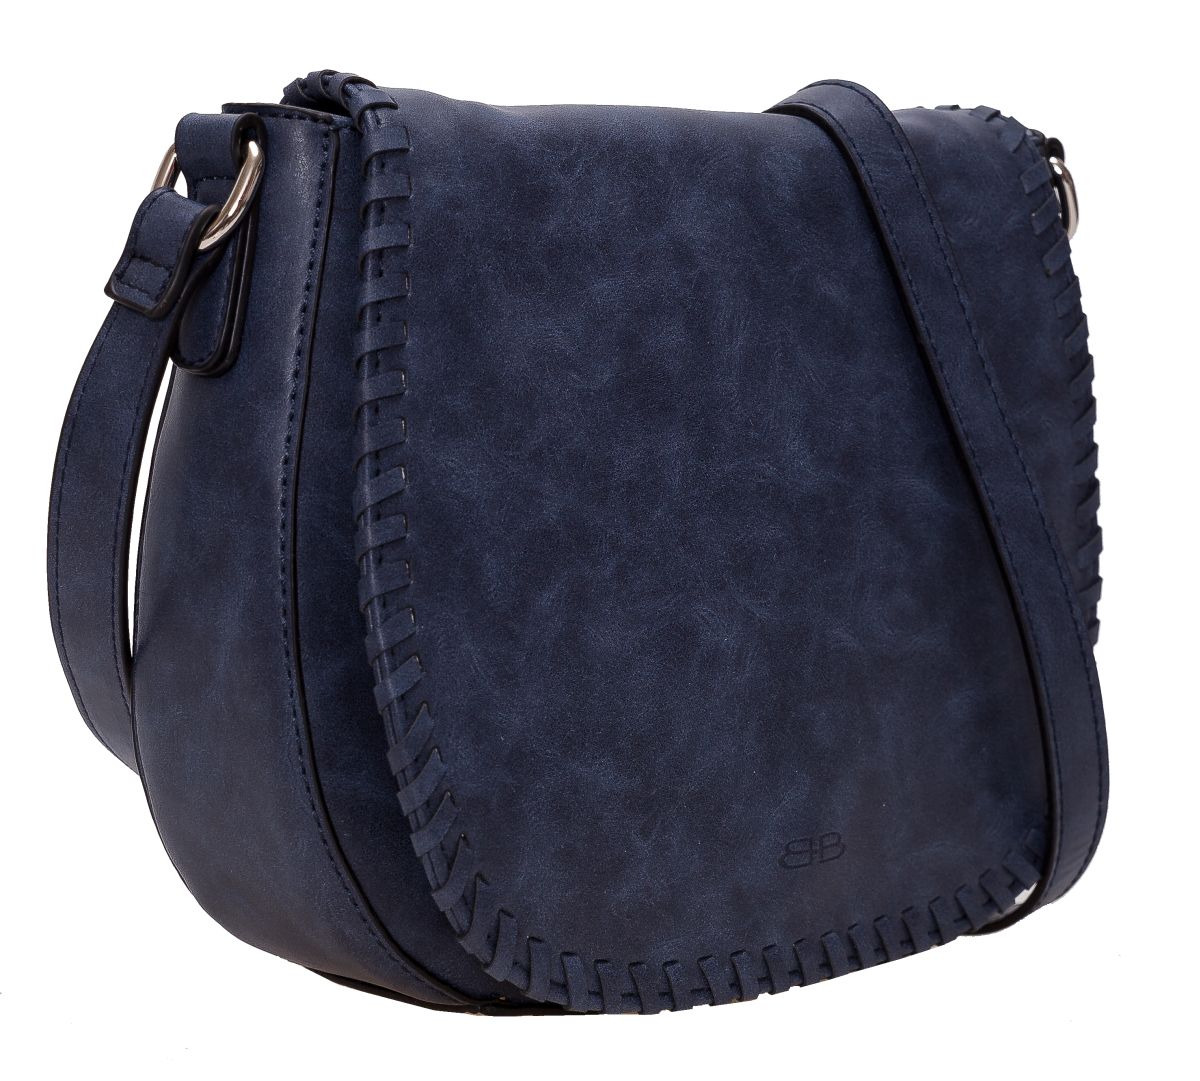 Überschlagtasche Umhängetasche saddle bag in blau - 460-419-65